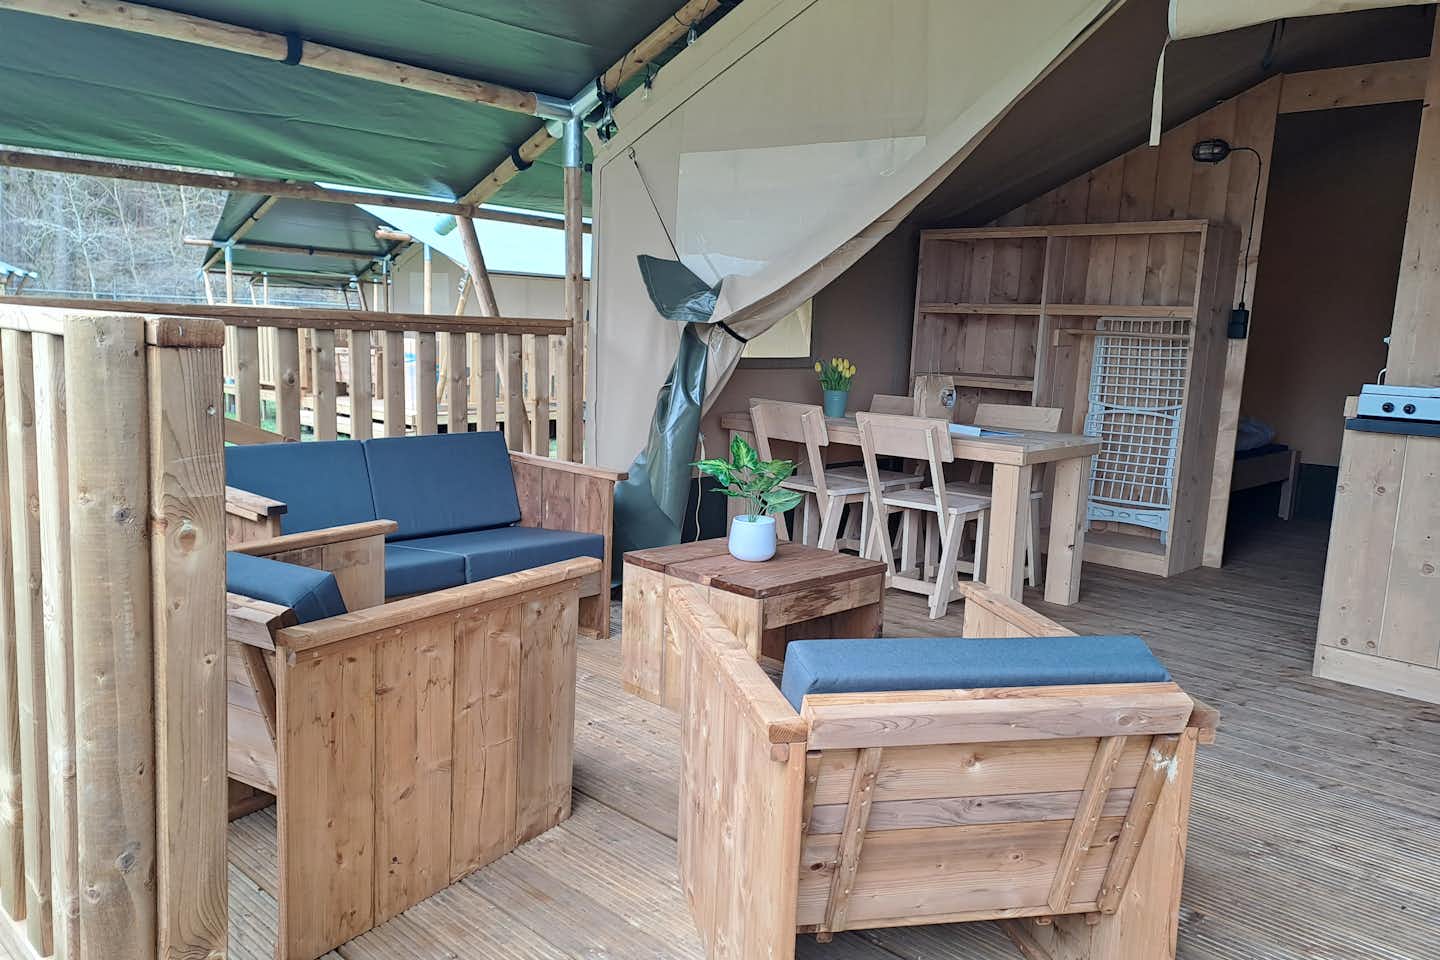 Vodatent @ Camping de Zeven Heuveltjes - gemütlicher Sitzbereich im Mietzelt